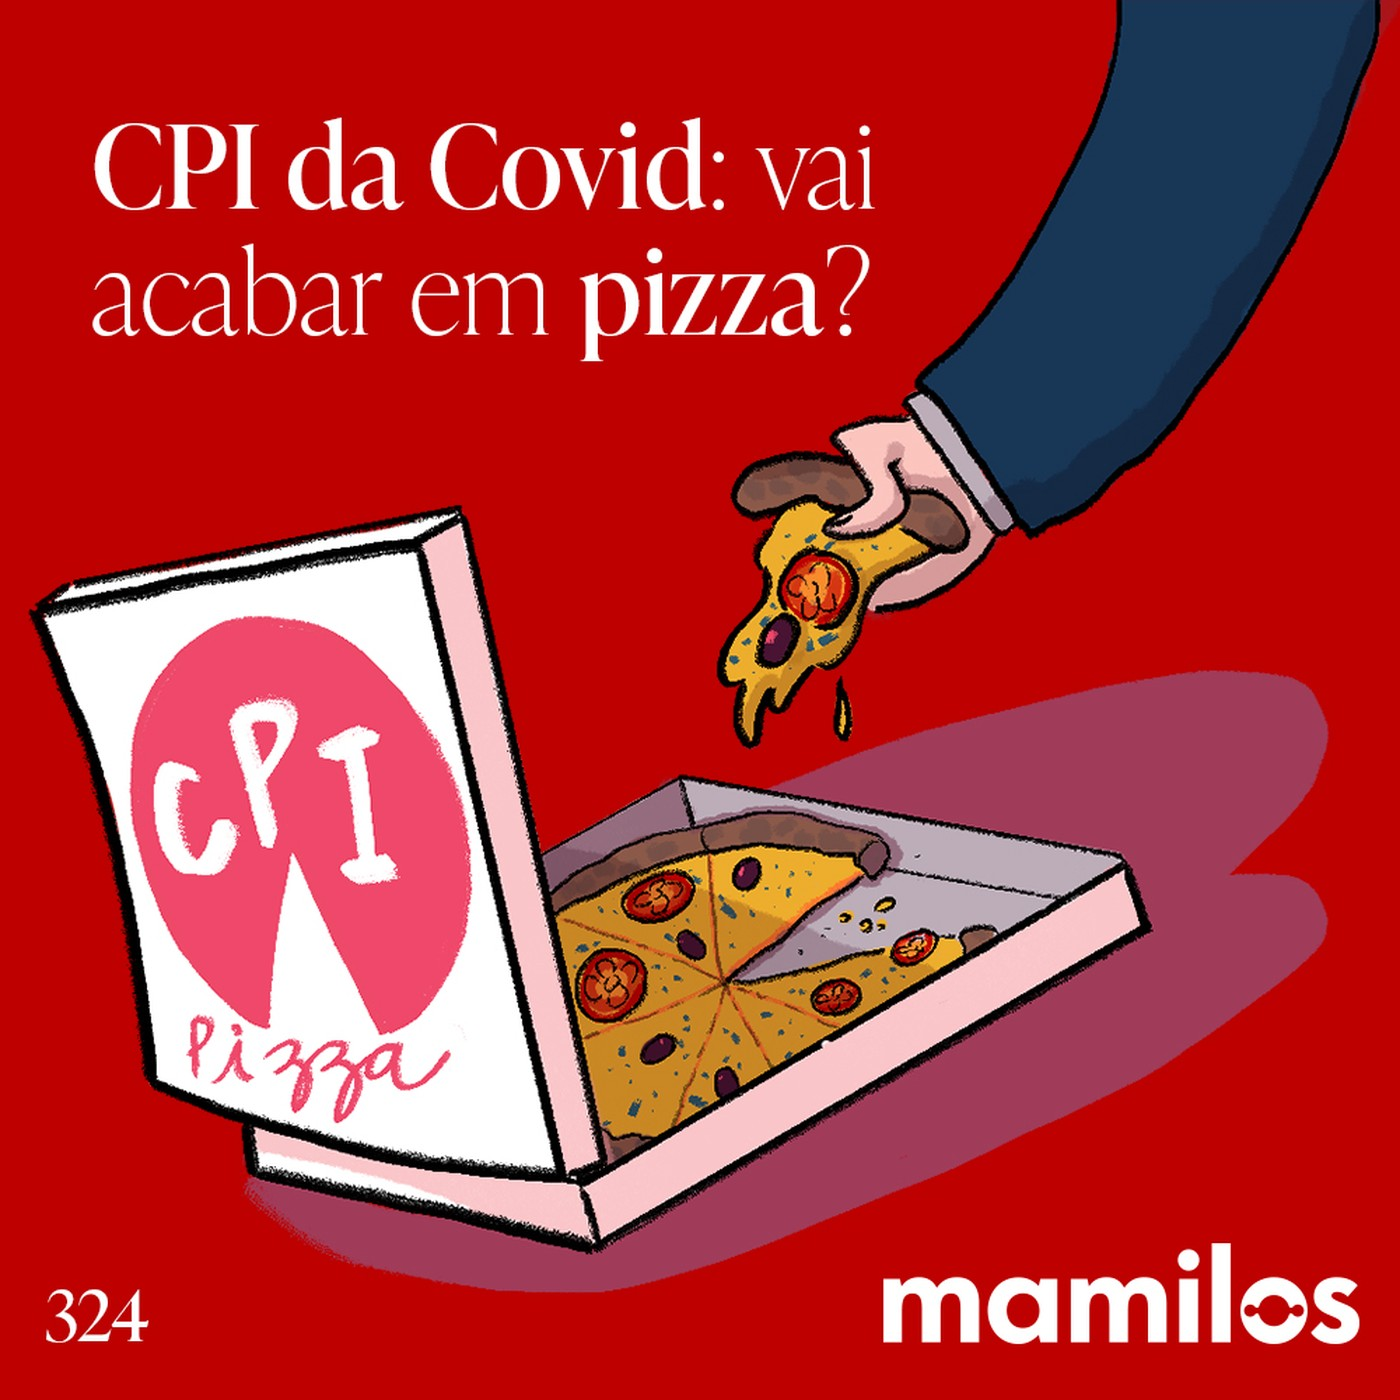 CPI da Covid: vai acabar em pizza?